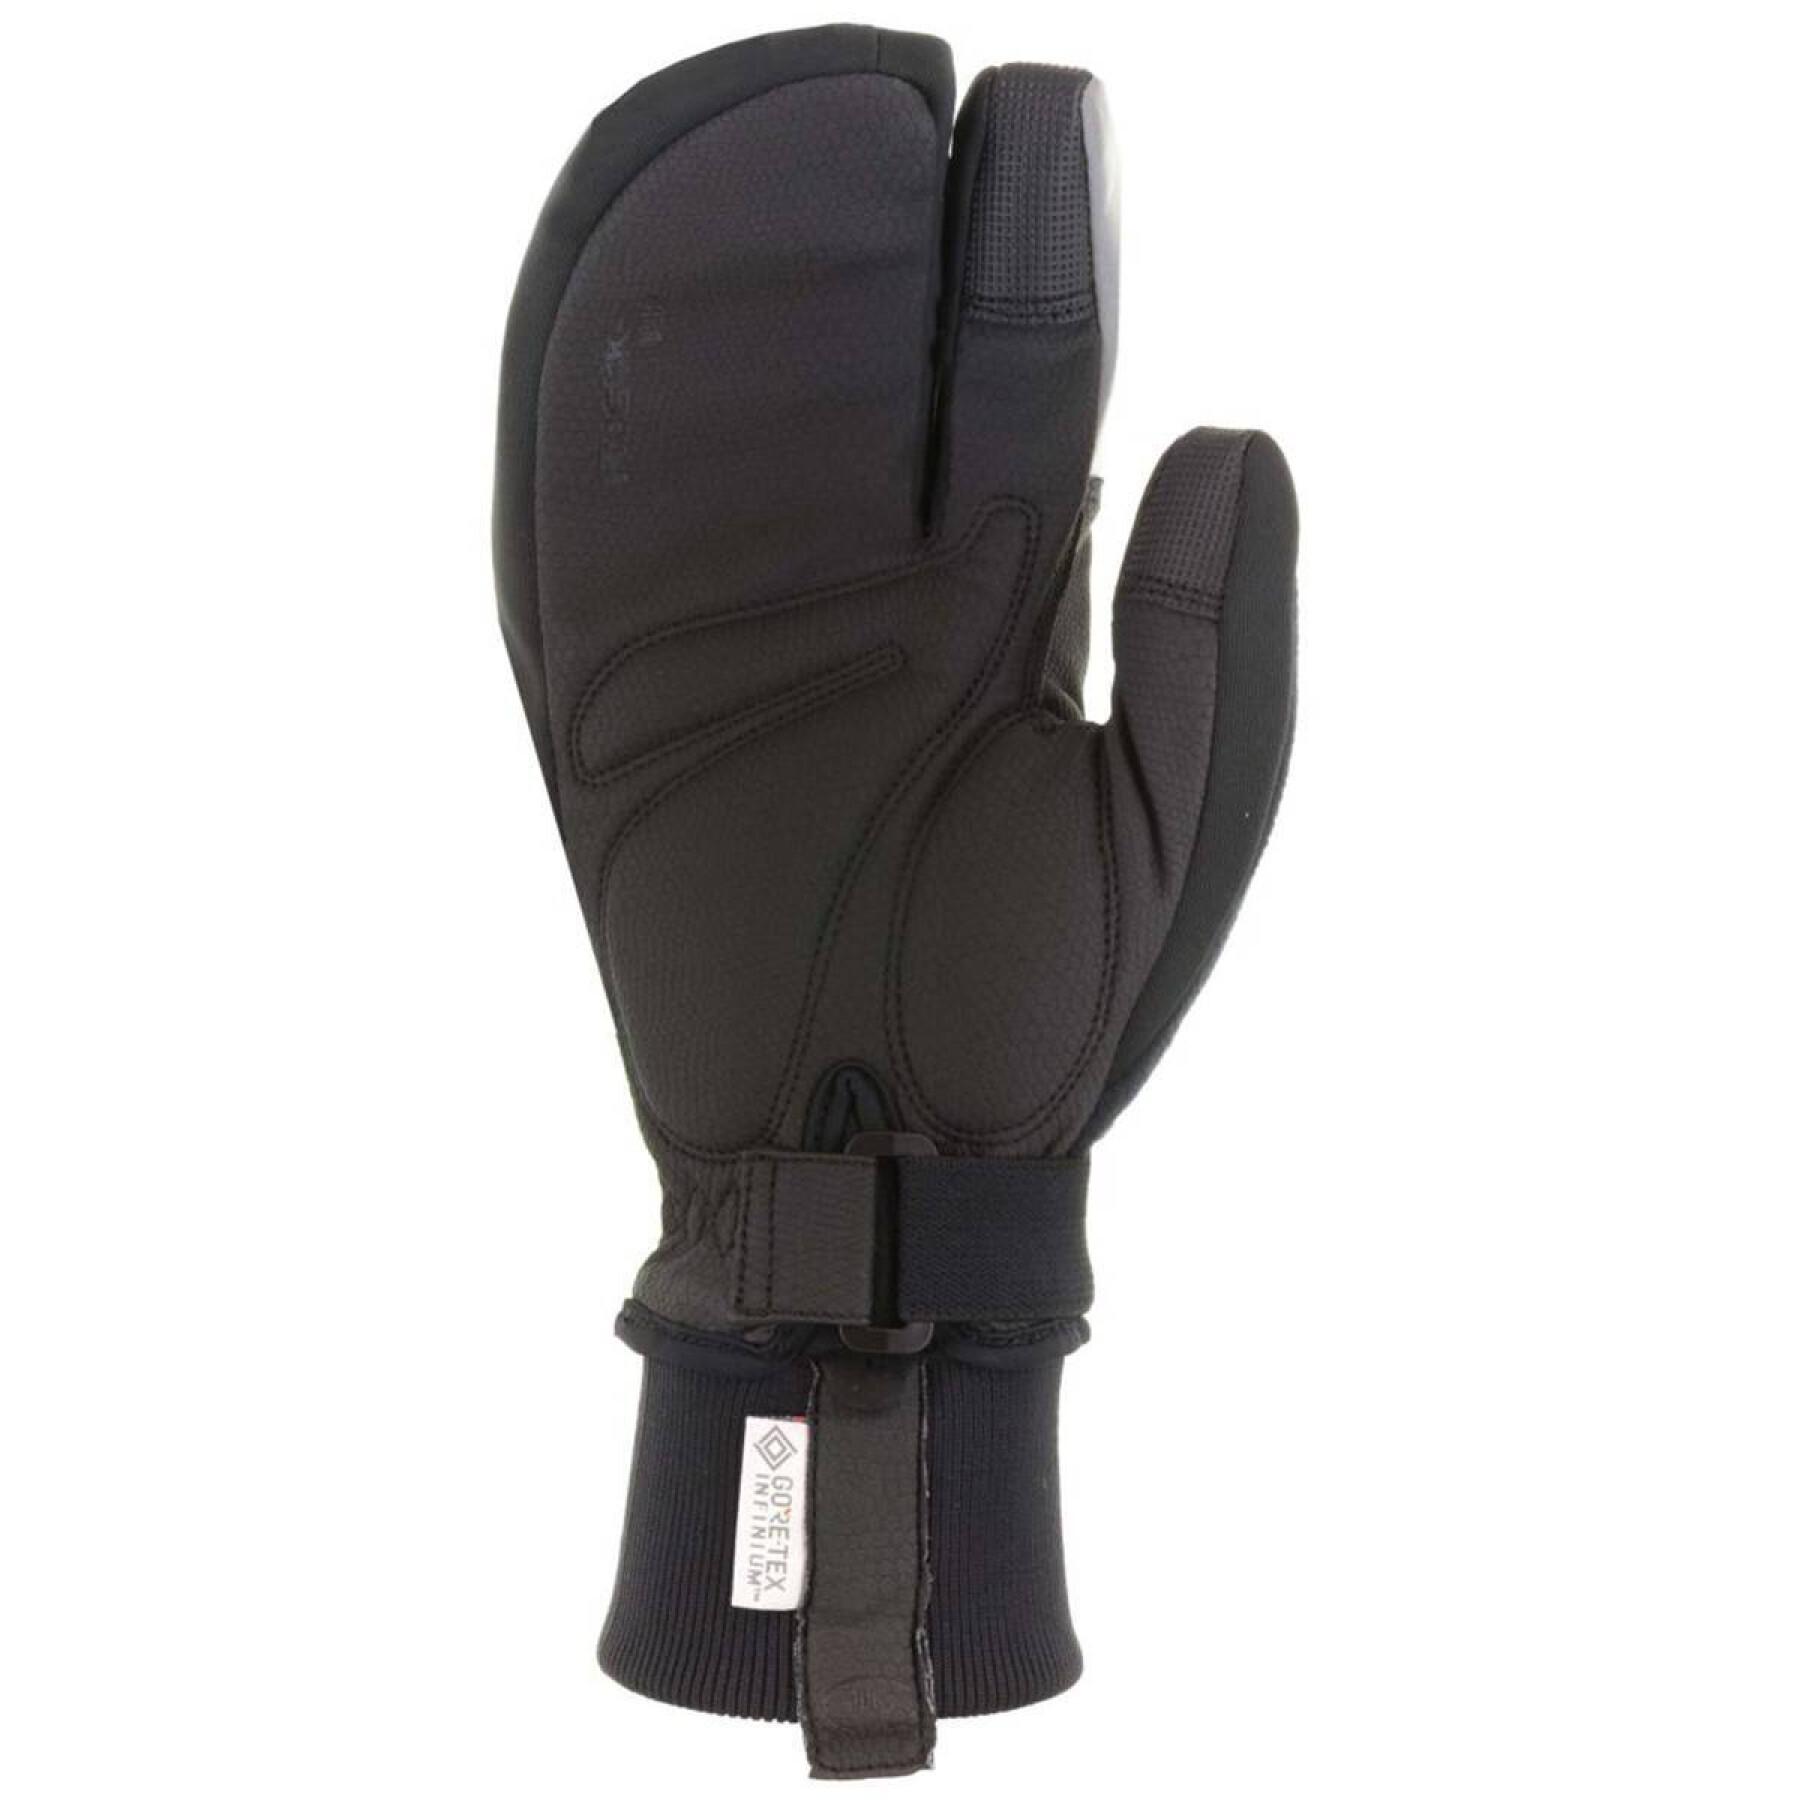 Long gloves Roeckl Villach 2 Trigger